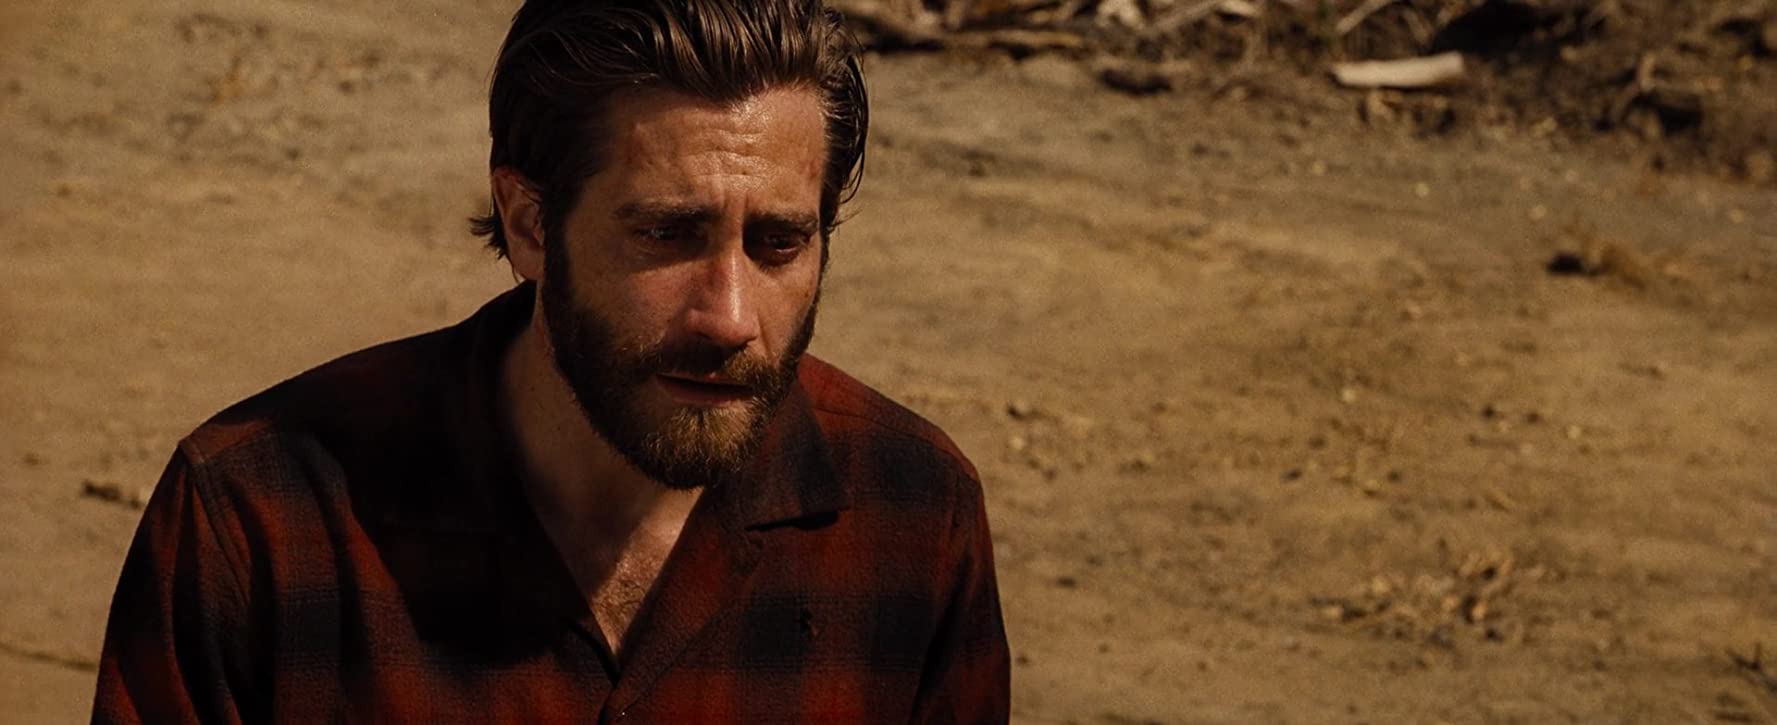 Jake Gyllenhaal's 10 Best Movies According To IMDb - OtakuKart